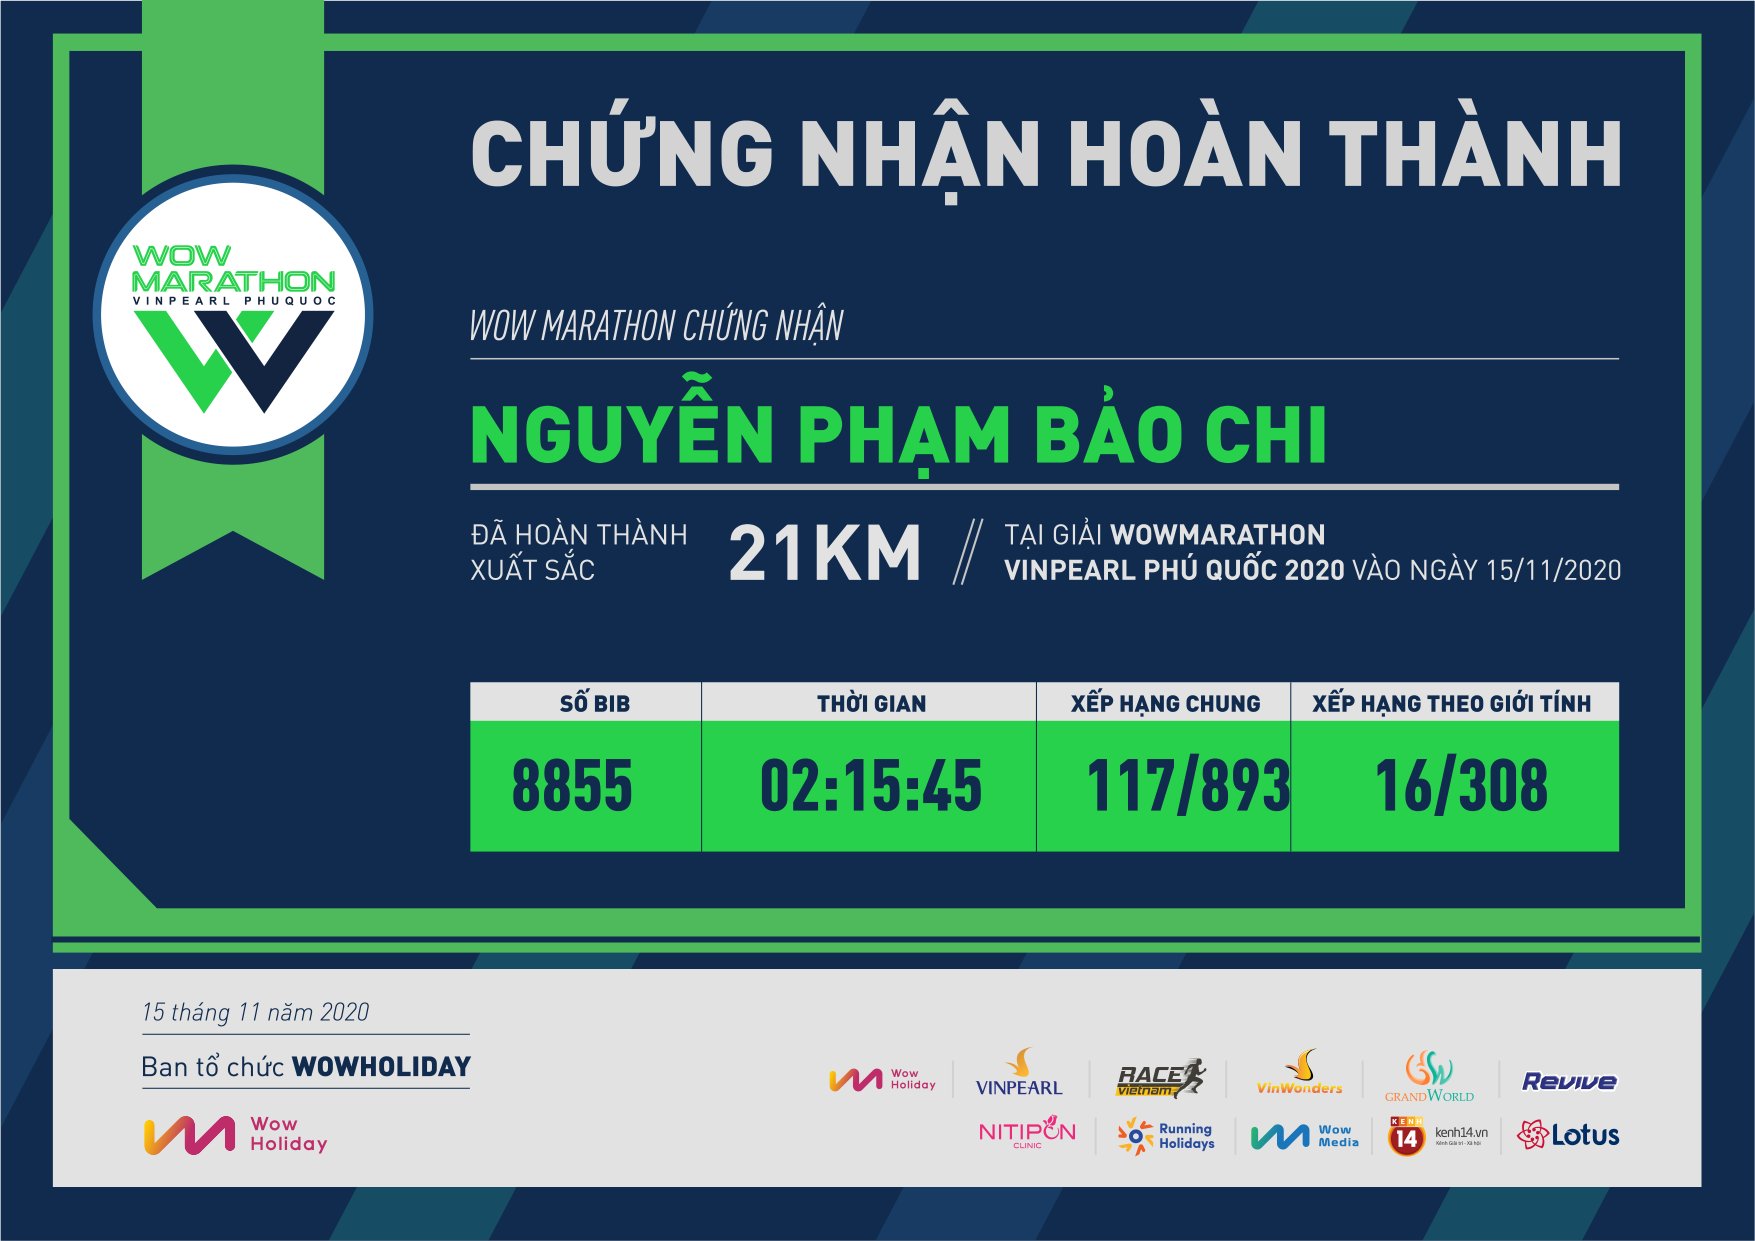 8855 - Nguyễn Phạm Bảo Chi